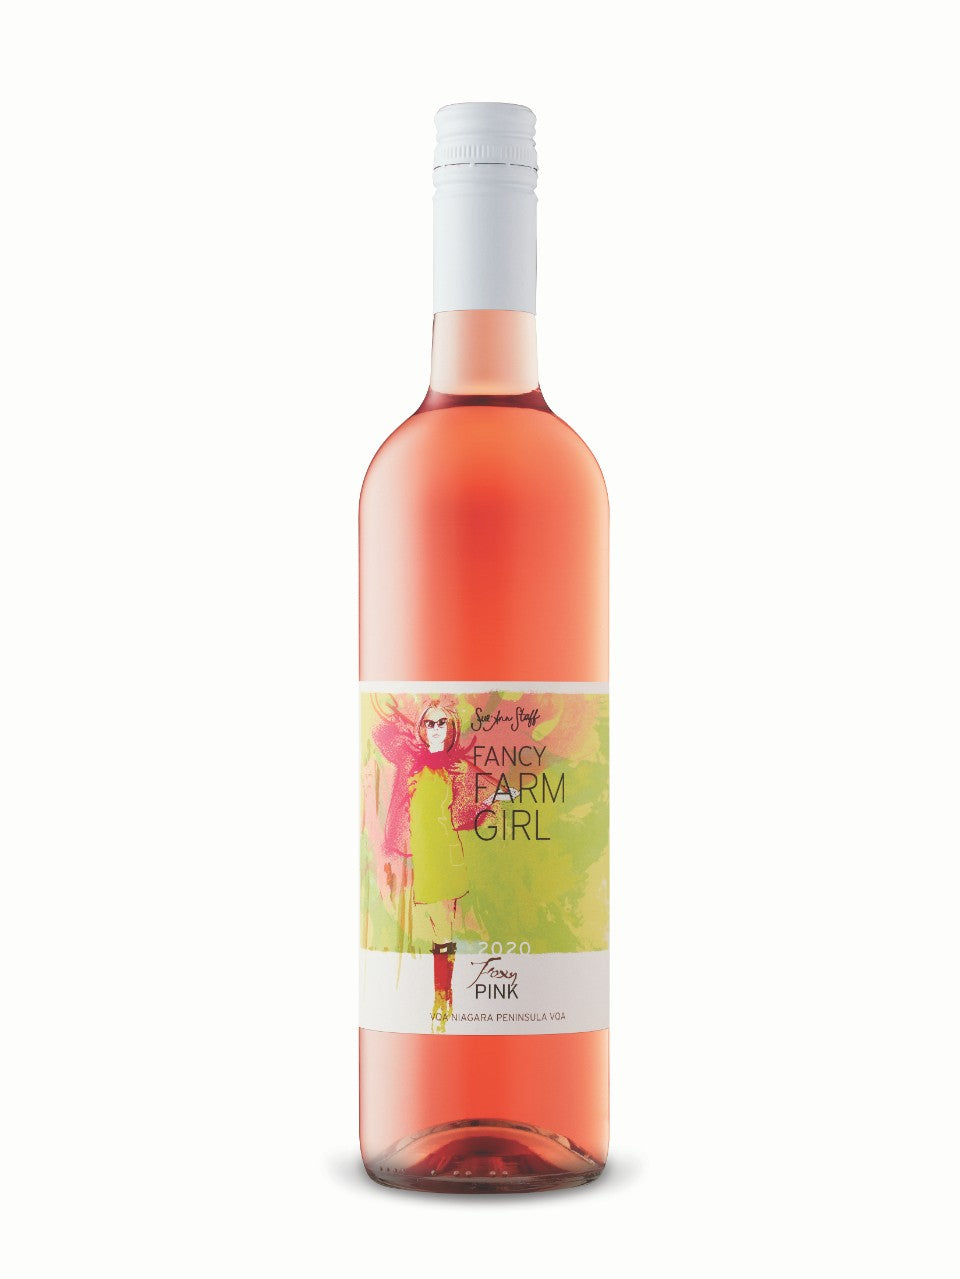 Sue-Ann Staff Fancy Farm Girl Foxy Pink Rosé 2020 750 ml bottle VINTAGES